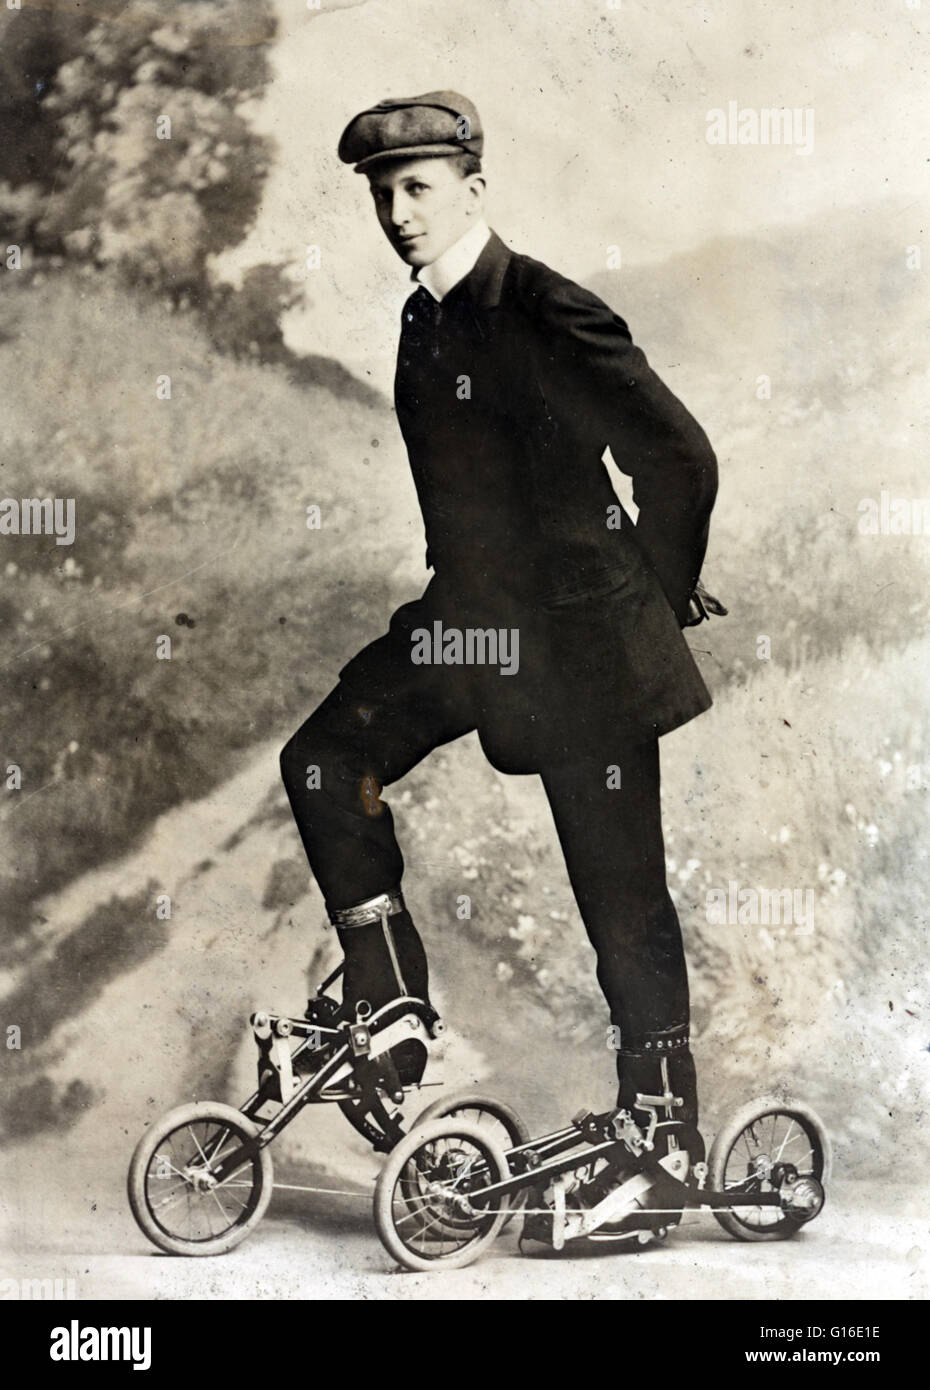 Titulada: 'patinar' muestra a un joven en miniatura, dos ruedas de  bicicleta-como patines que son pedaleada. Es una máquina Takypod es  impulsado por pedalear, pero a diferencia de una bicicleta, el ciclista